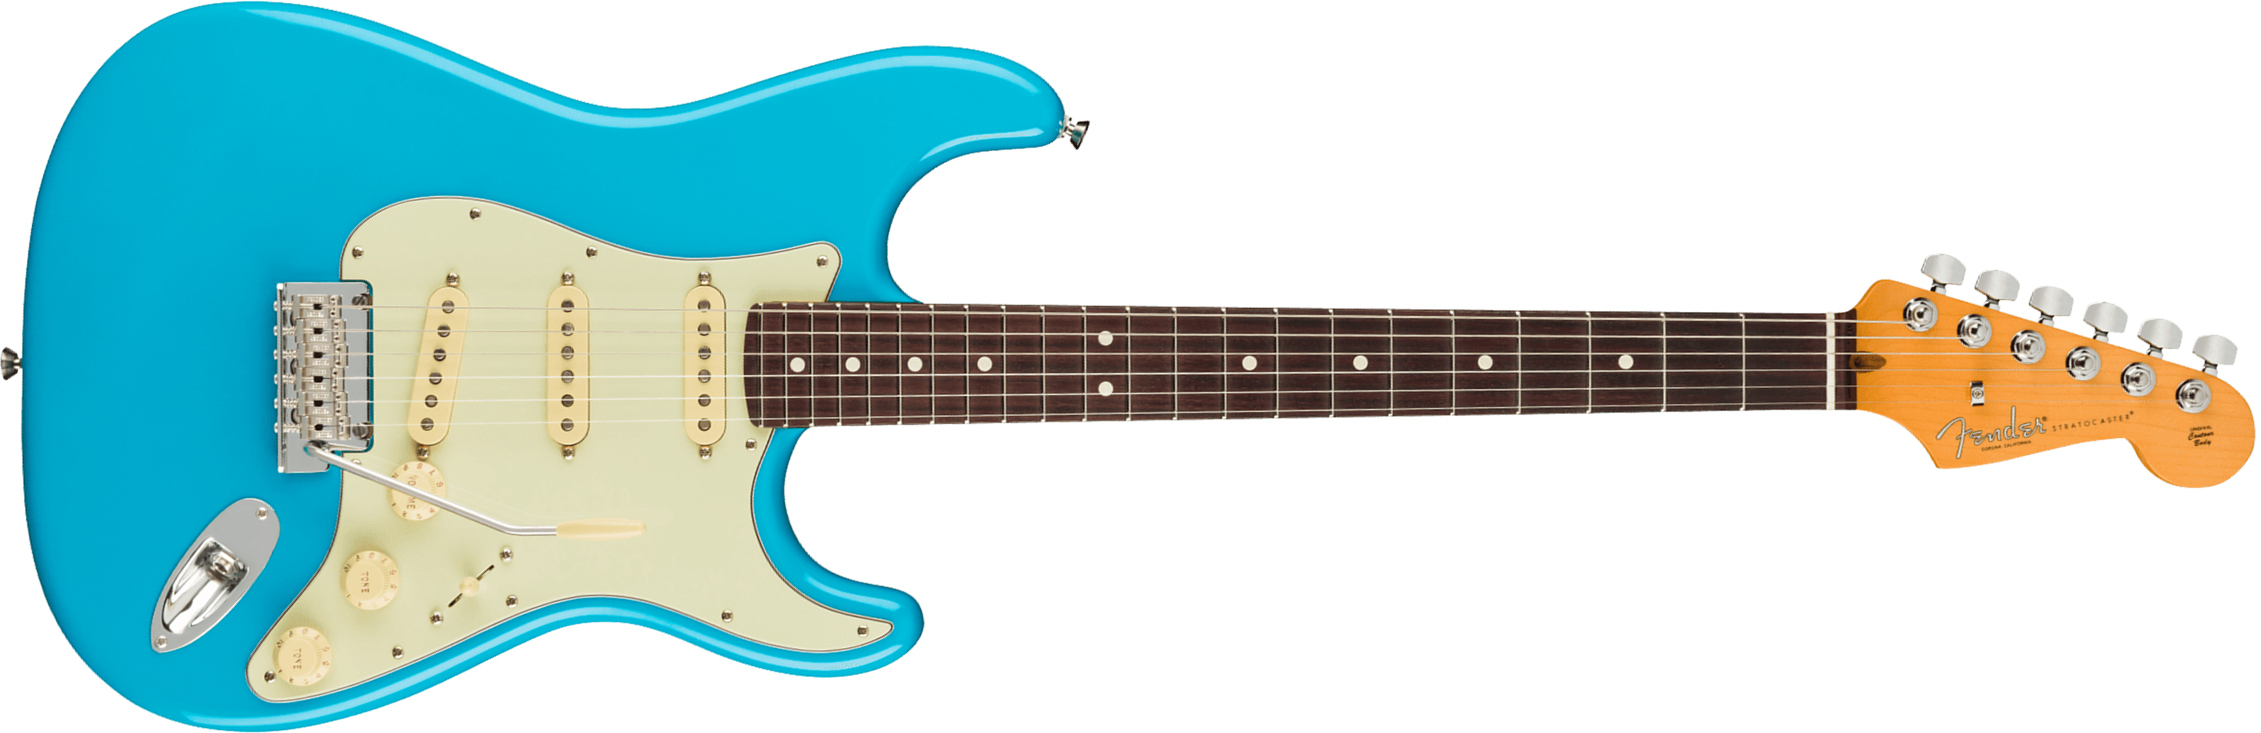 Fender Strat American Professional Ii Usa Rw - Miami Blue - Elektrische gitaar in Str-vorm - Main picture